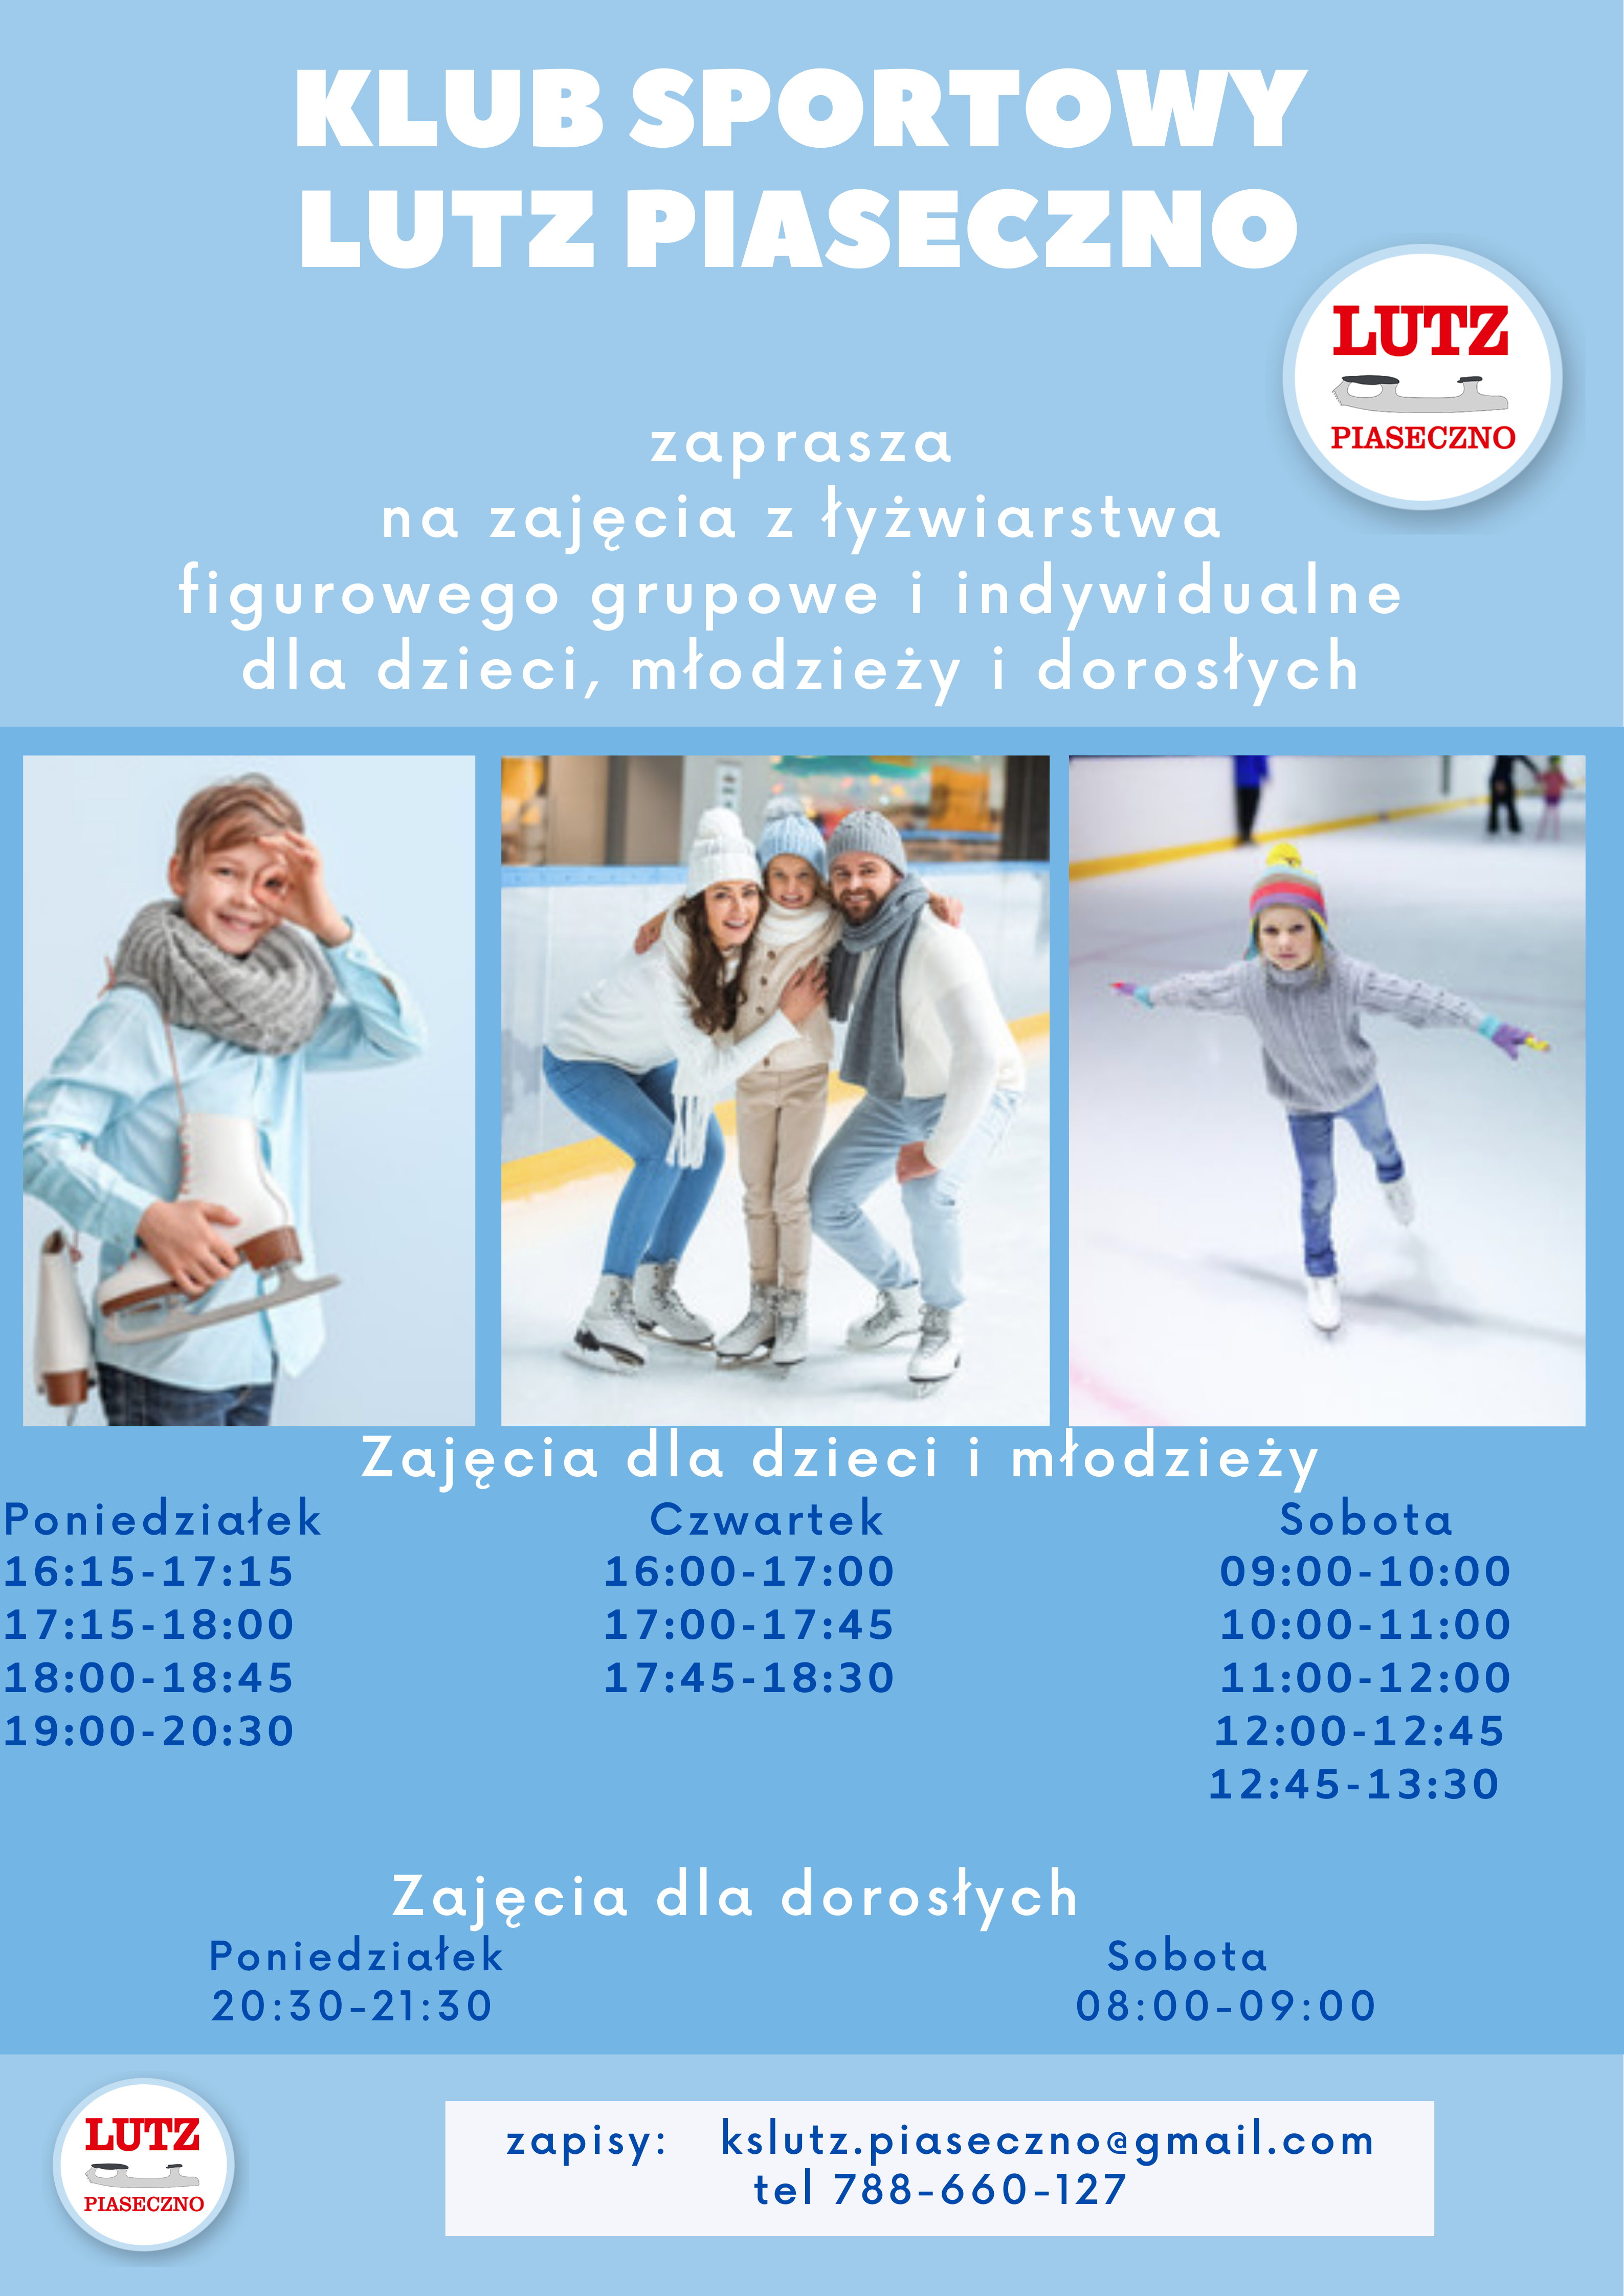 Rusza kolejny sezon piaseczyńskiego lodowiska. Na plakacie zdjęcia łyżwiarzy i informacja o harmonogramie zajęć oraz danych kontaktowych.